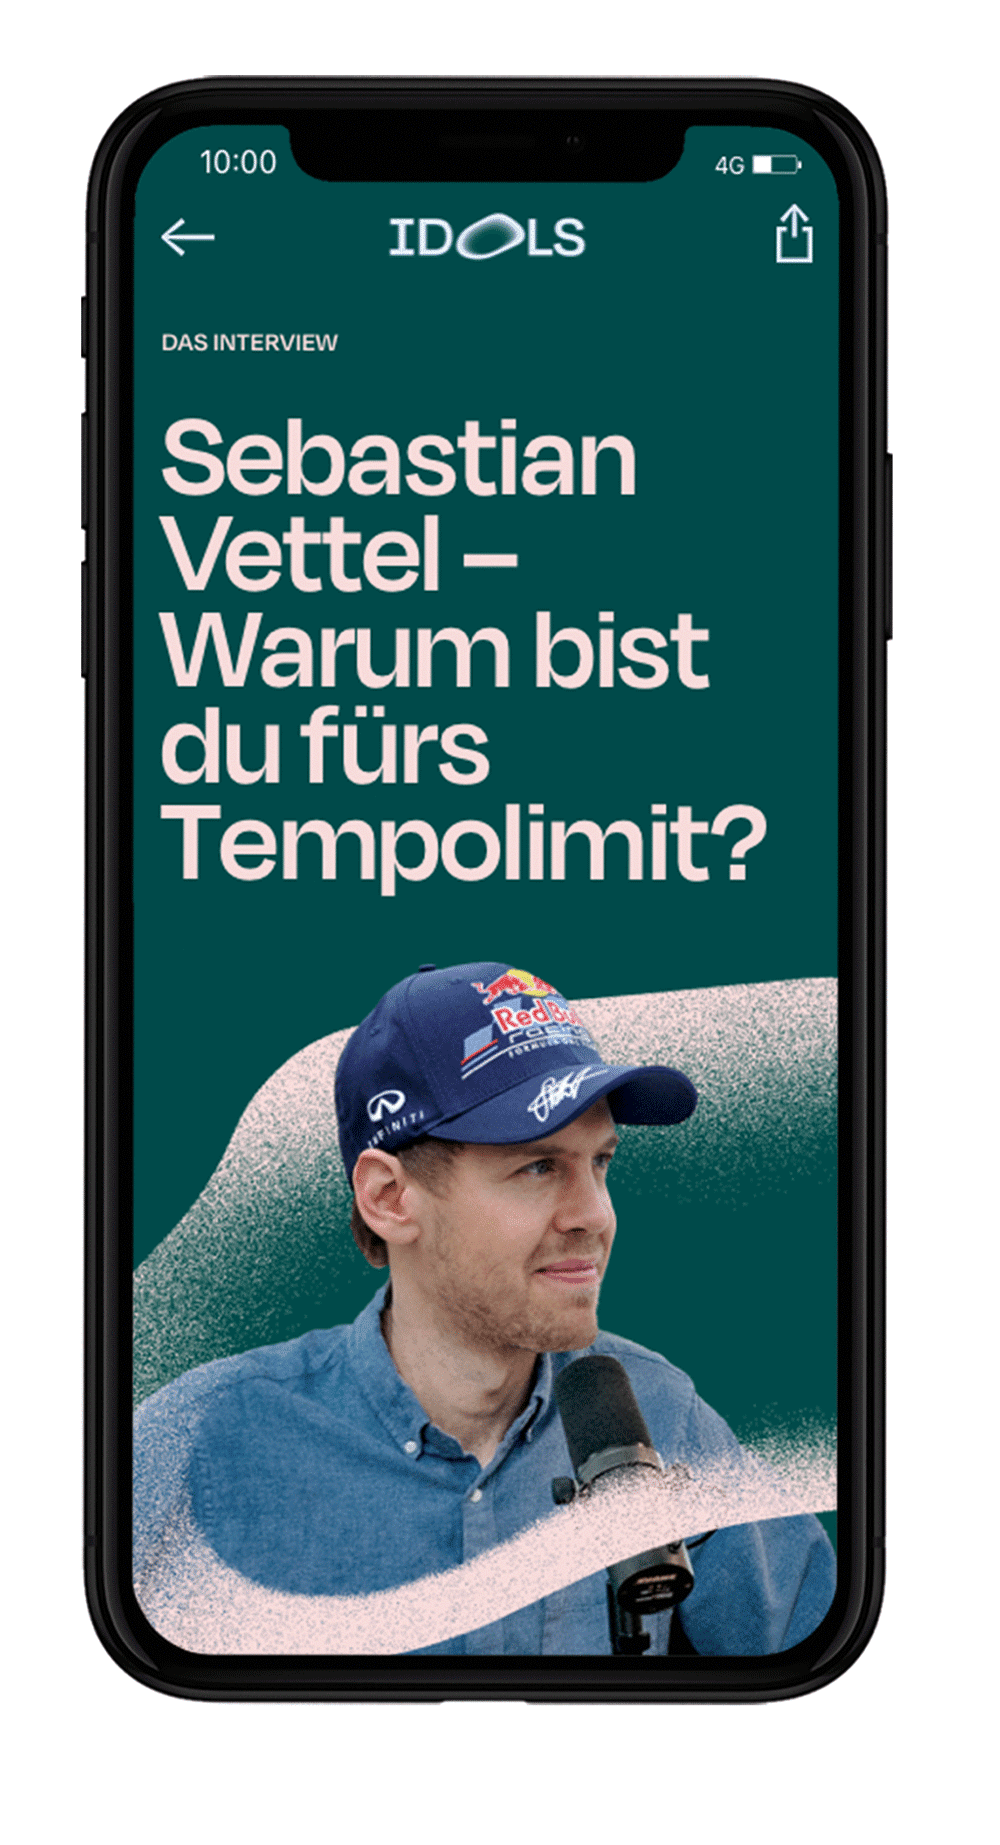 Mobile Ansicht des Web-Magazins Idols. Artikelaufmacher zum Interview mit Sebastian Vettel zum Thema Tempolimit